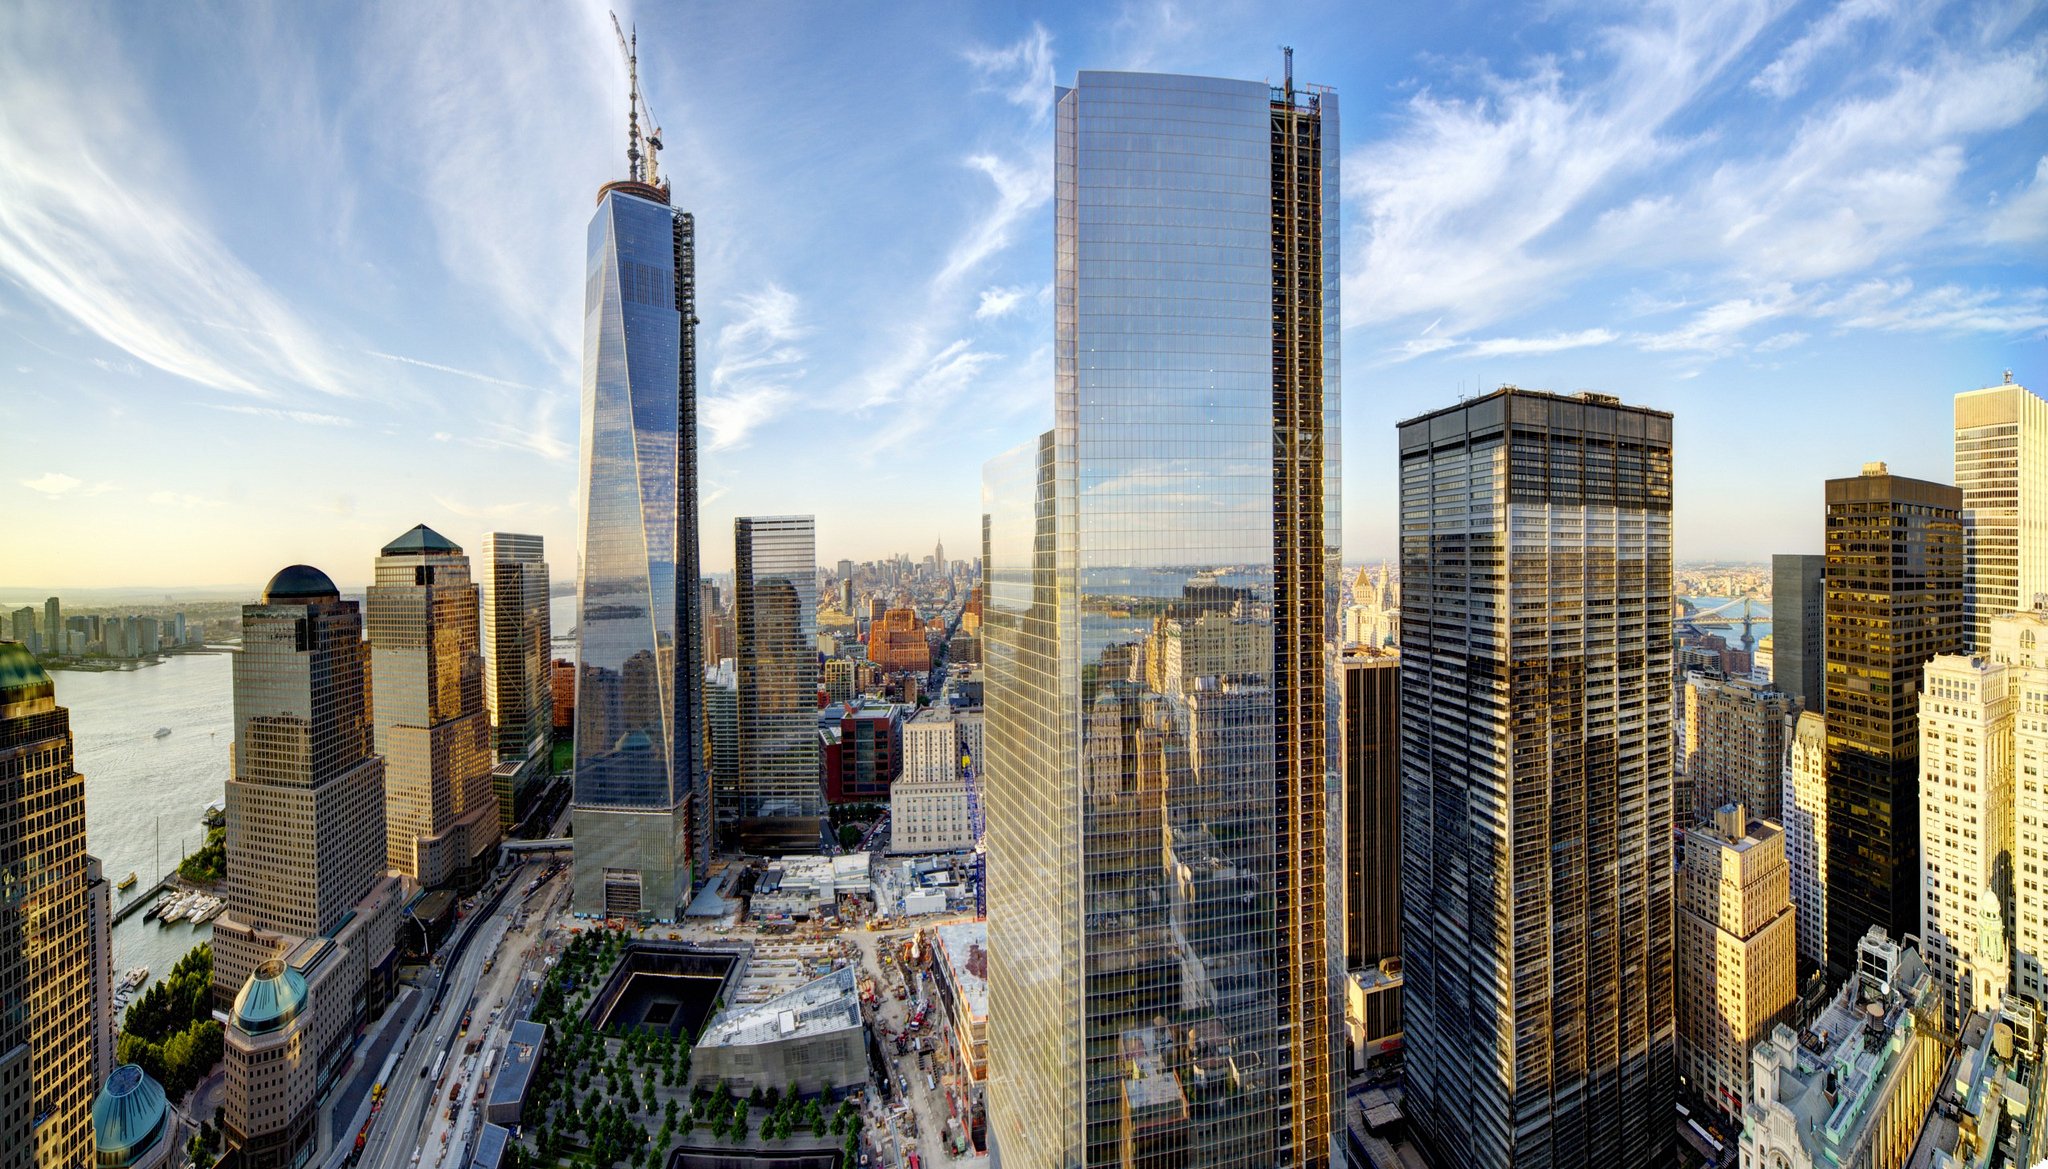 нью-йорк манхэттен цмт 1 всемирный торговый центр сша всемирный торговый центр город небо облака небоскребы здания дома панорама